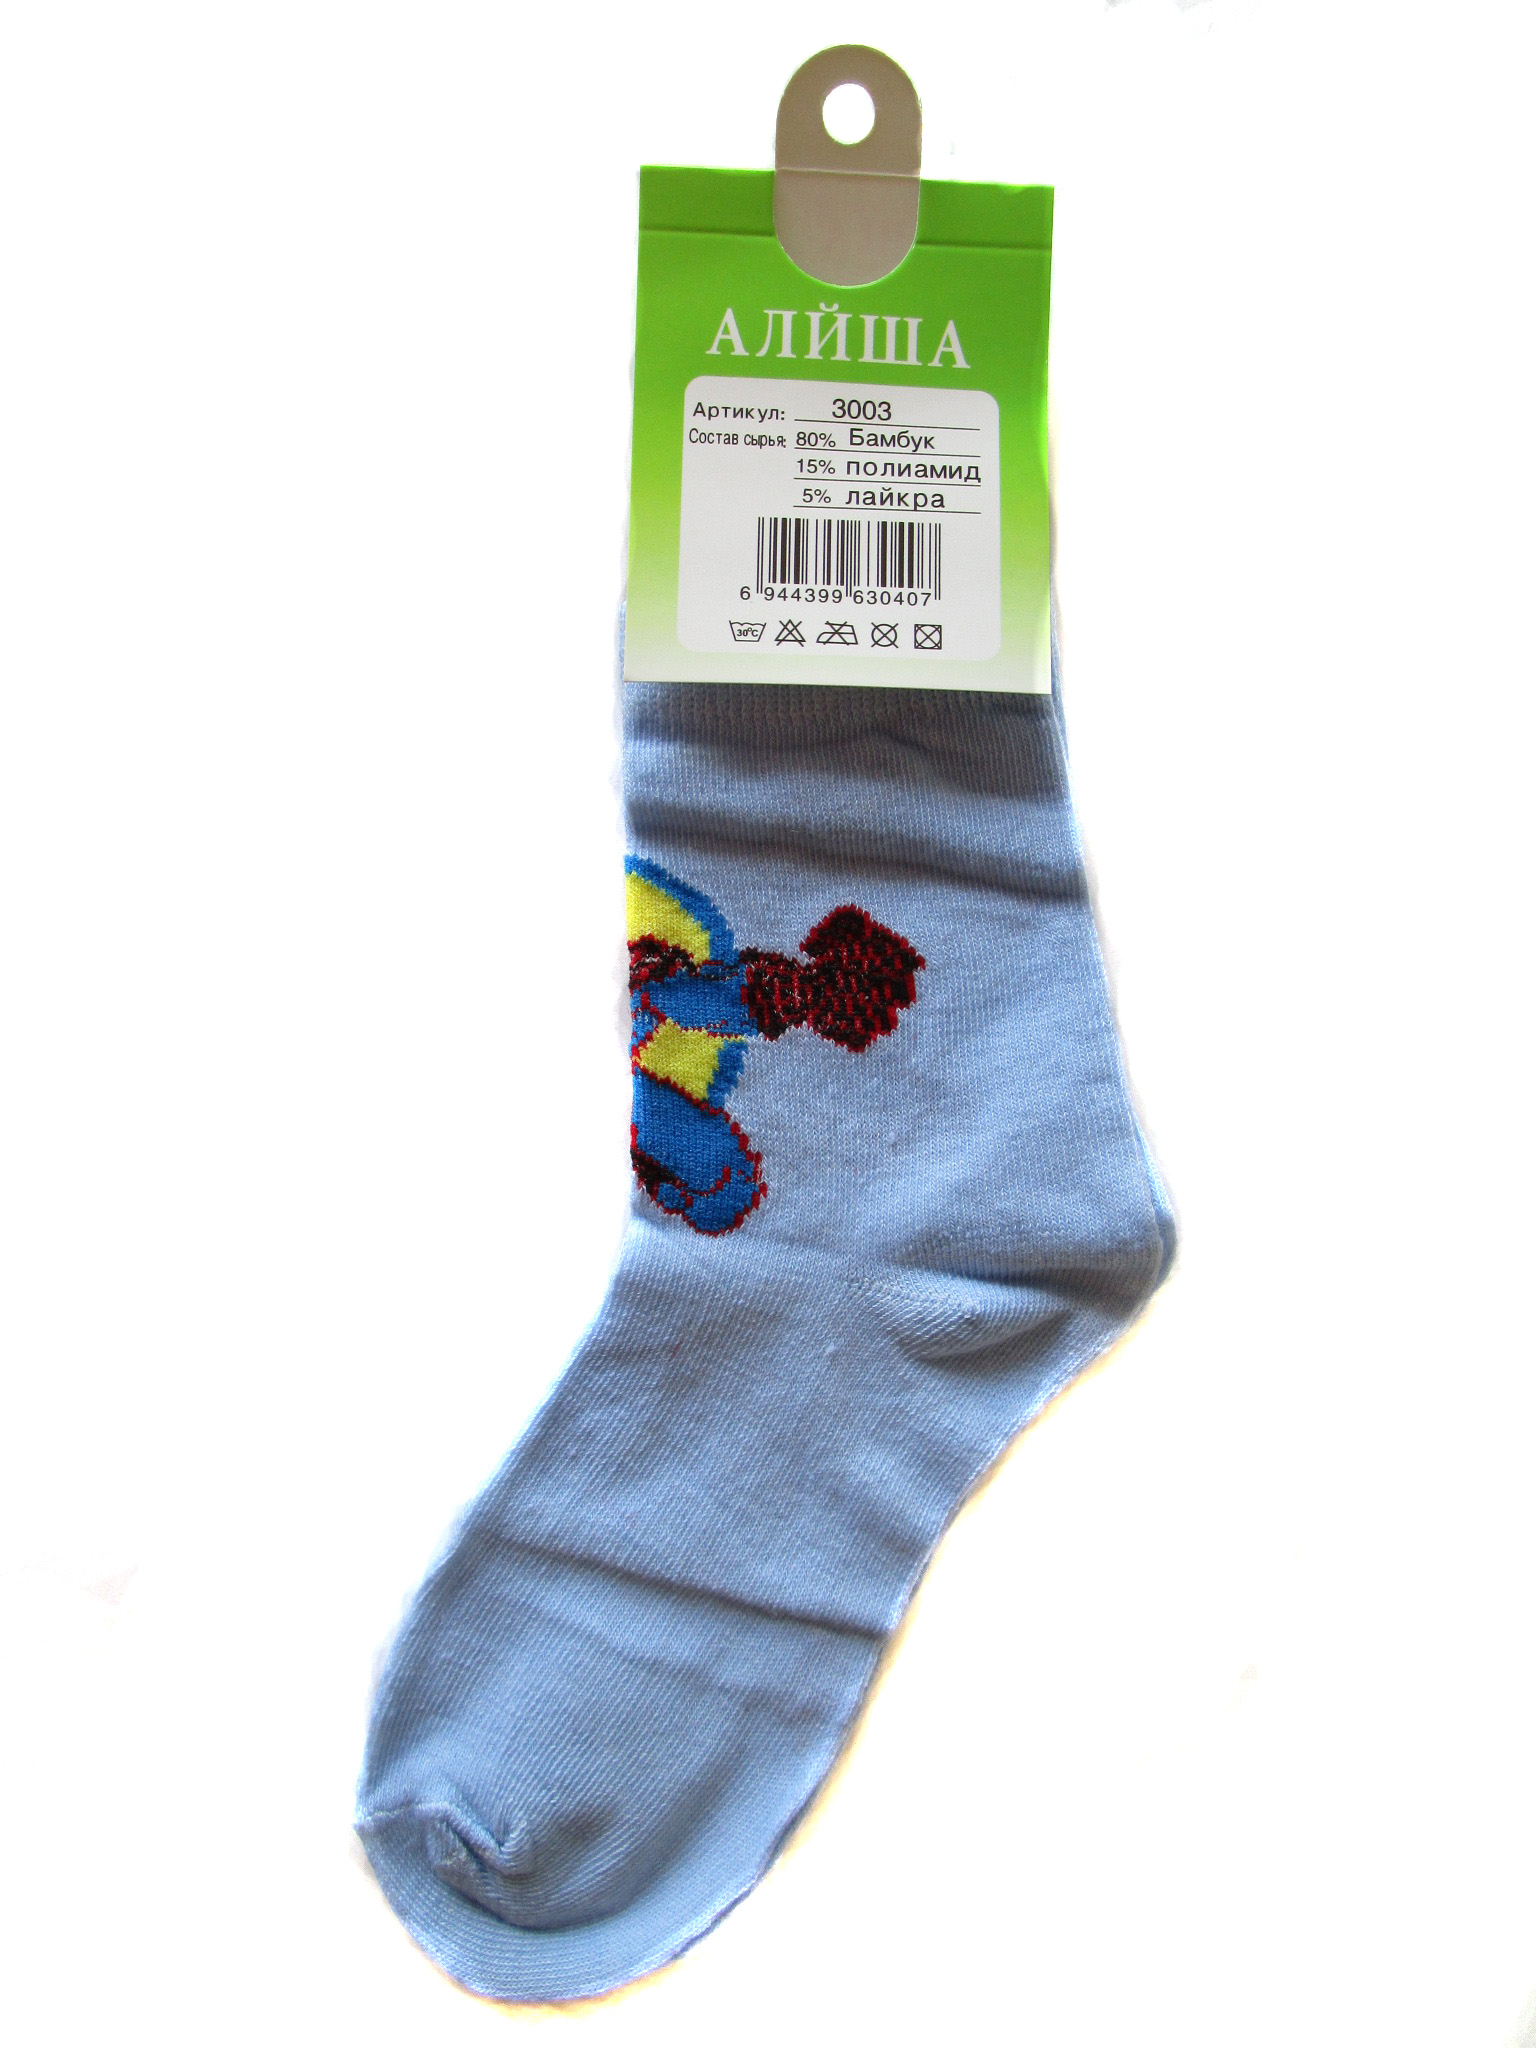 Детские носки "Алйша" (арт.3003)